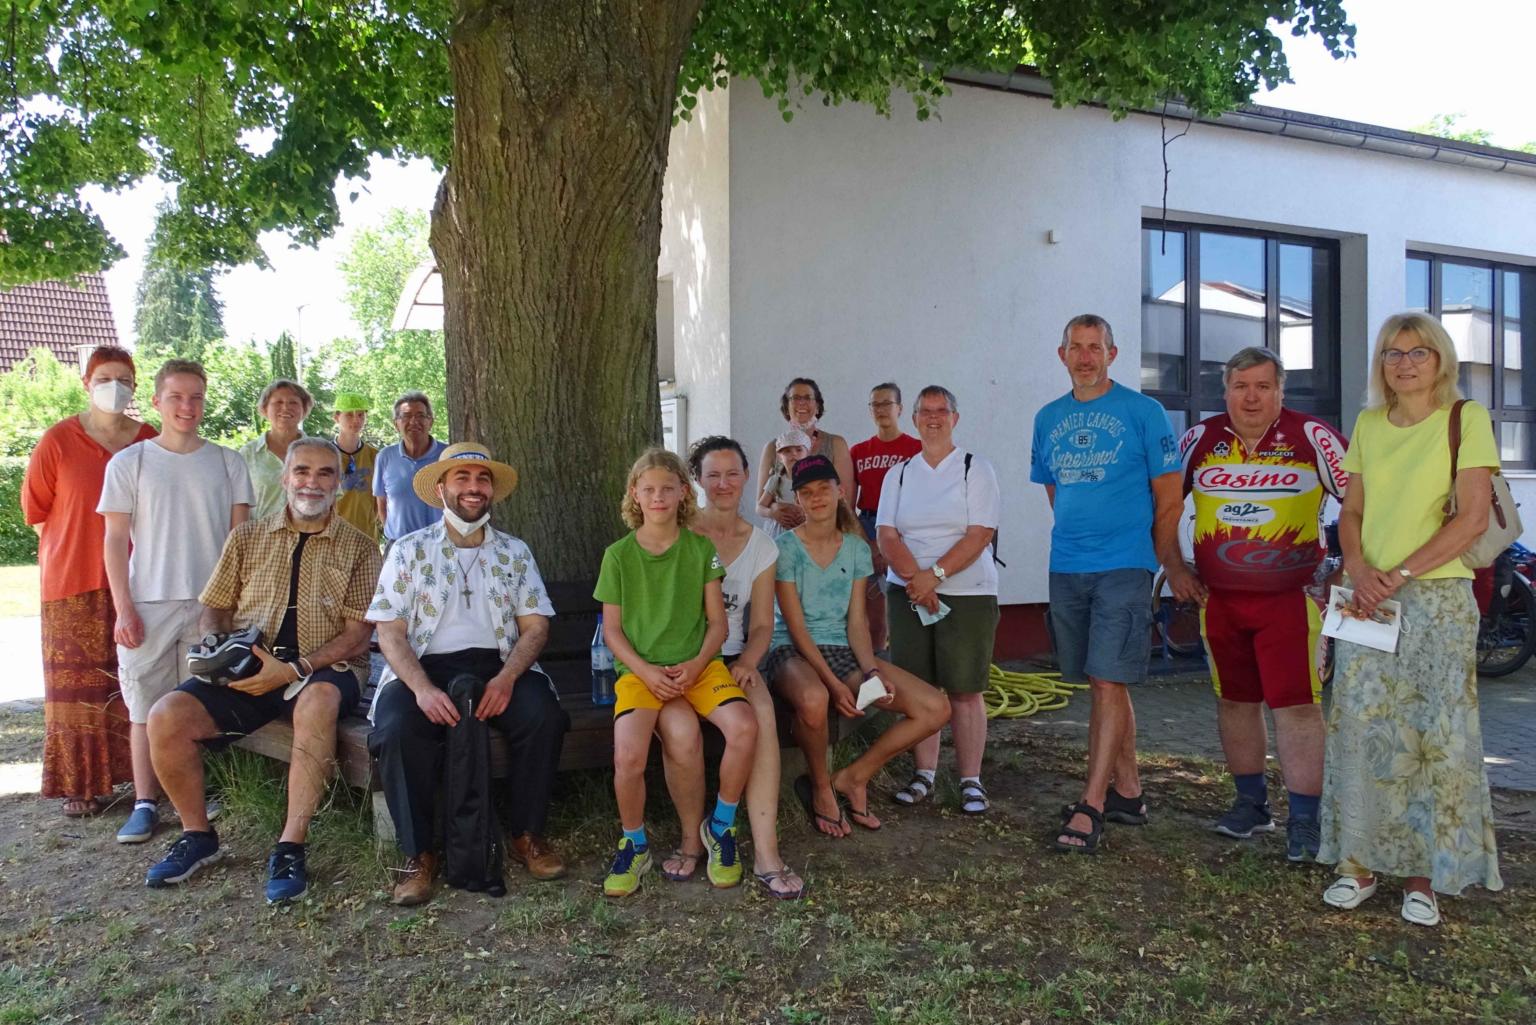 Mörfelden, 19. Juni 2021: Gemeindemitglieder aus Mörfelden mit einer gemischten Gruppe, die aus Menschen aus Astheim, Trebur, Geinsheim, Groß-Gerau und Klein-Gerau bestand. (c) Markus Schenk